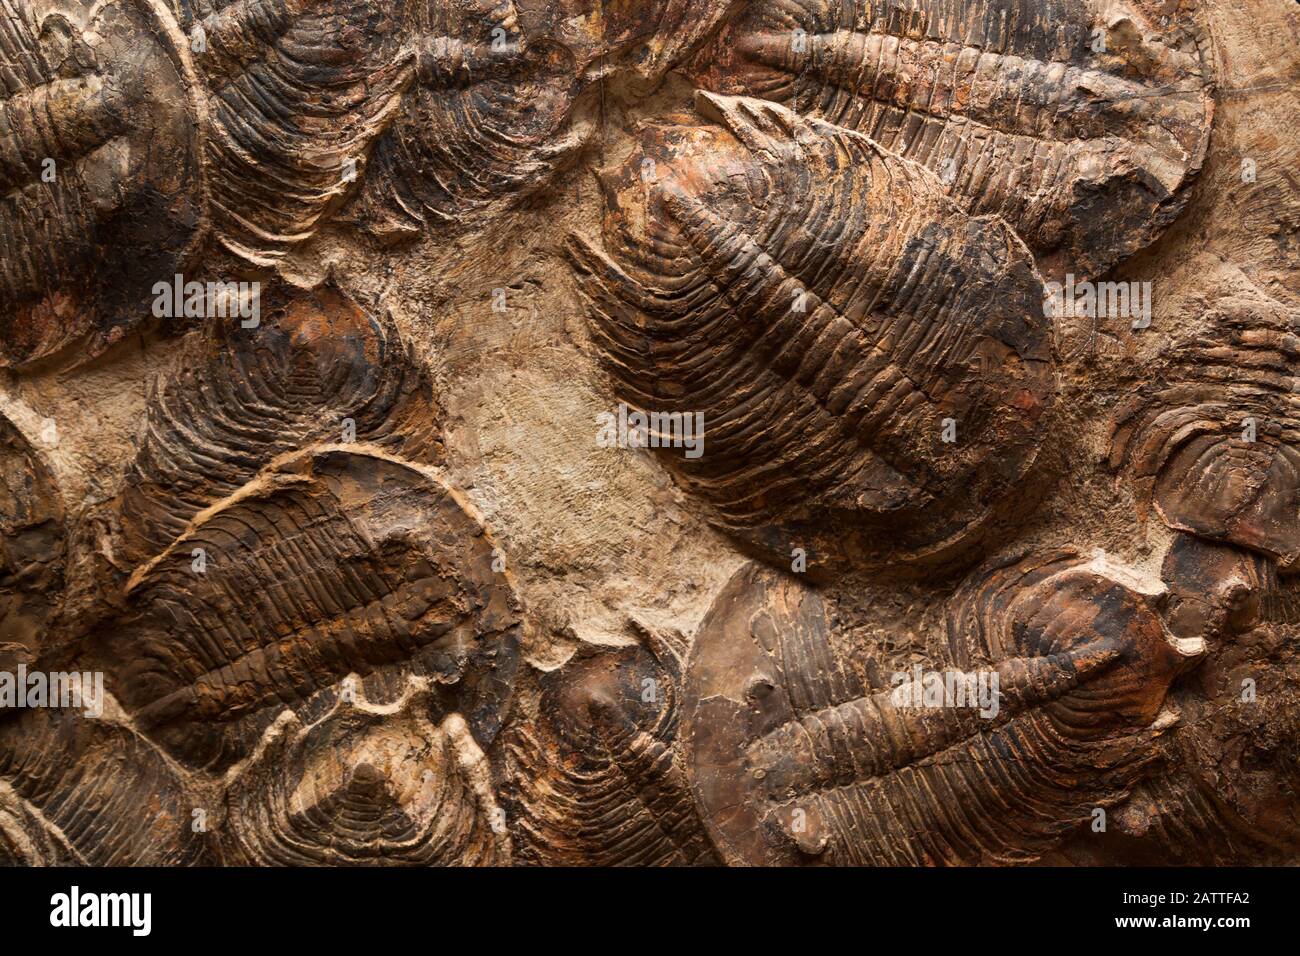 Une exposition fossile de plusieurs trilobites bien préservés qui sont morts dans un événement d'extinction massive autour du Maroc il y a plusieurs millions d'années. Banque D'Images